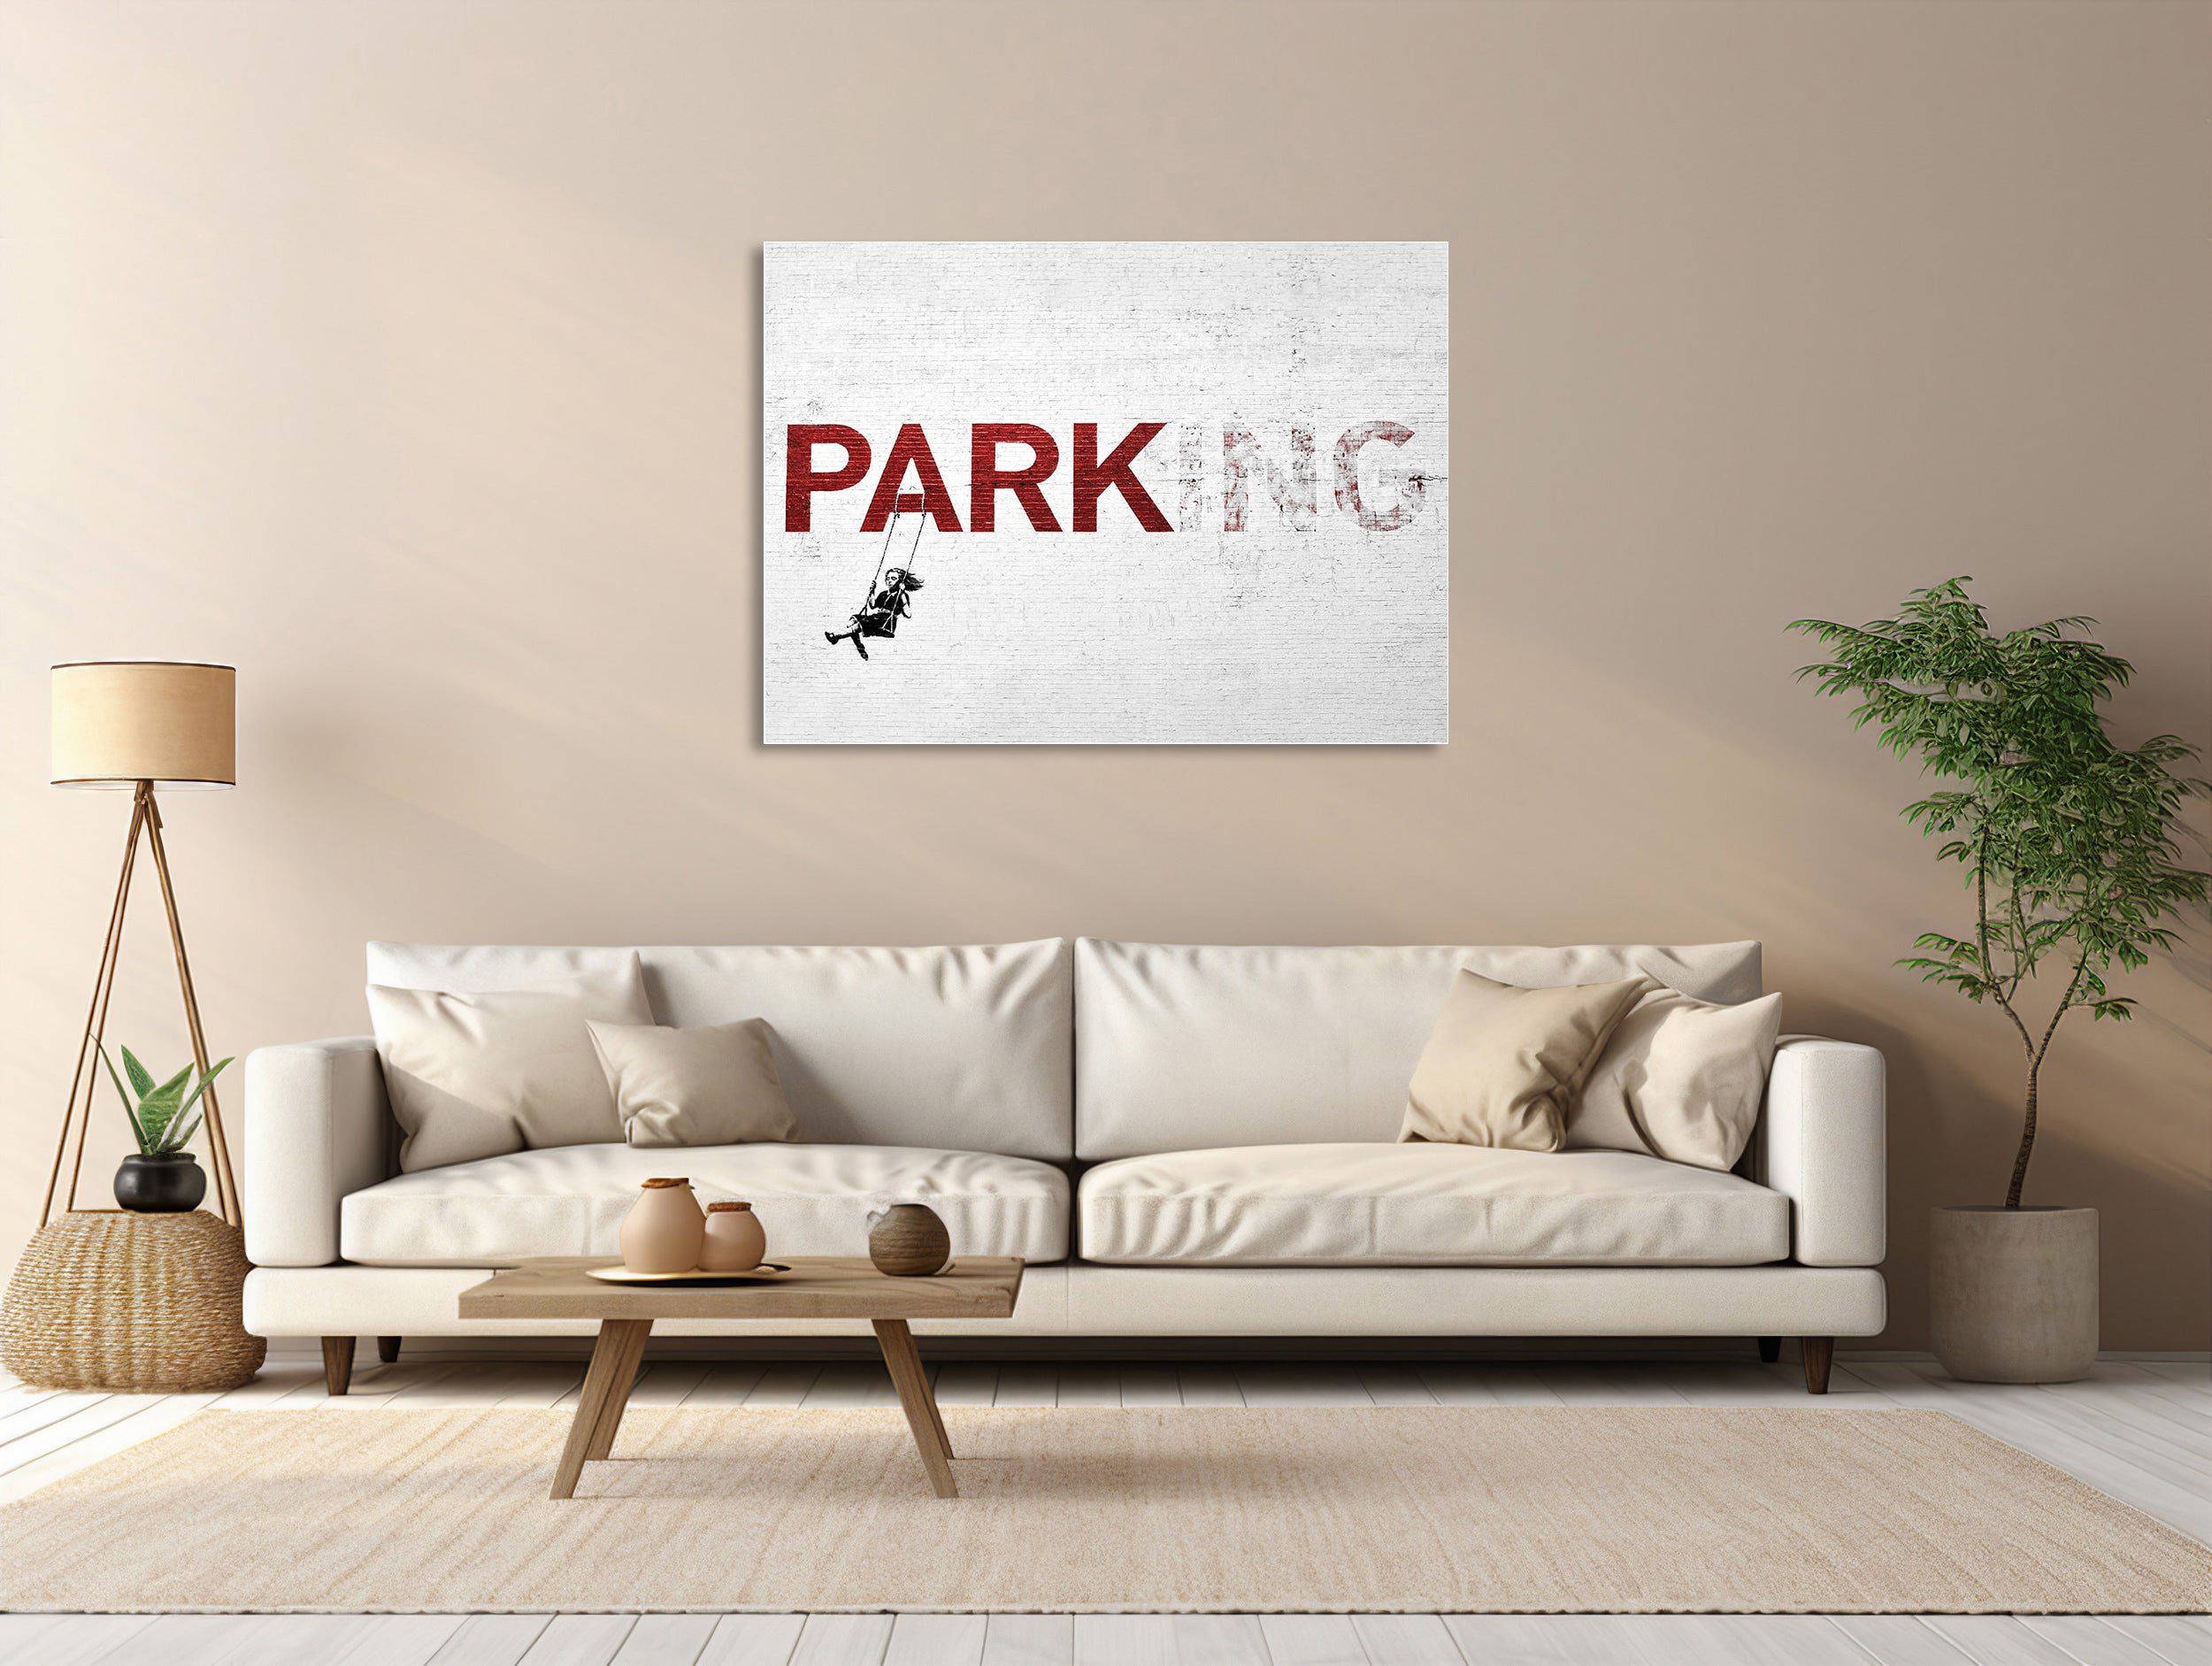 "Park(ing)" - Urban Swing Abenteuer